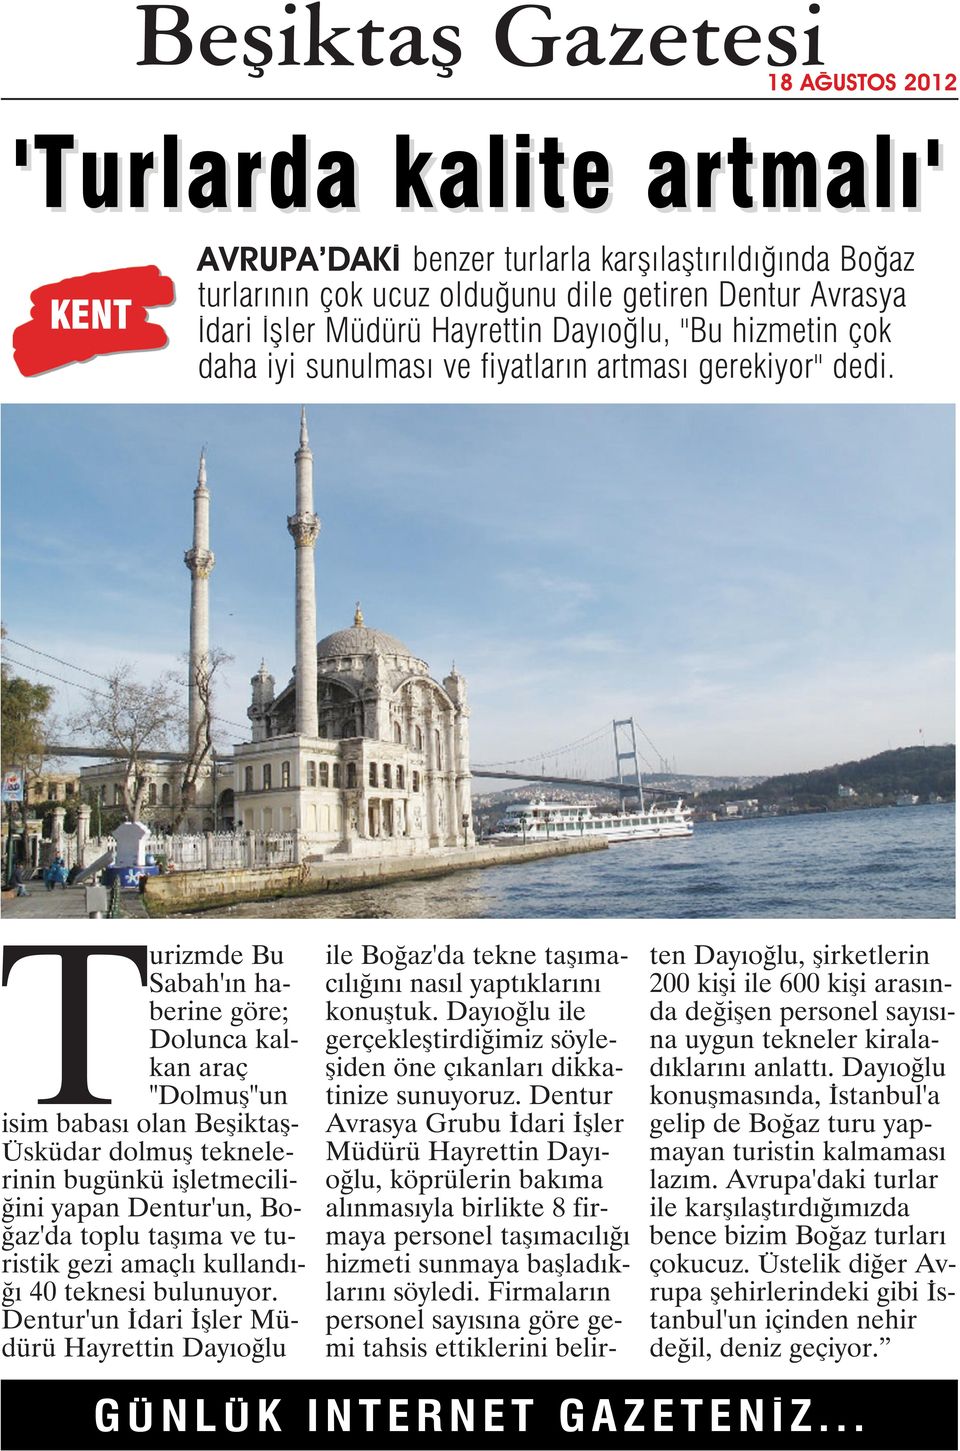 Turizmde Bu Sabah'ın haberine göre; Dolunca kalkan araç "Dolmuş"un isim babası olan Beşiktaş- Üsküdar dolmuş teknelerinin bugünkü işletmeciliğini yapan Dentur'un, Boğaz'da toplu taşıma ve turistik